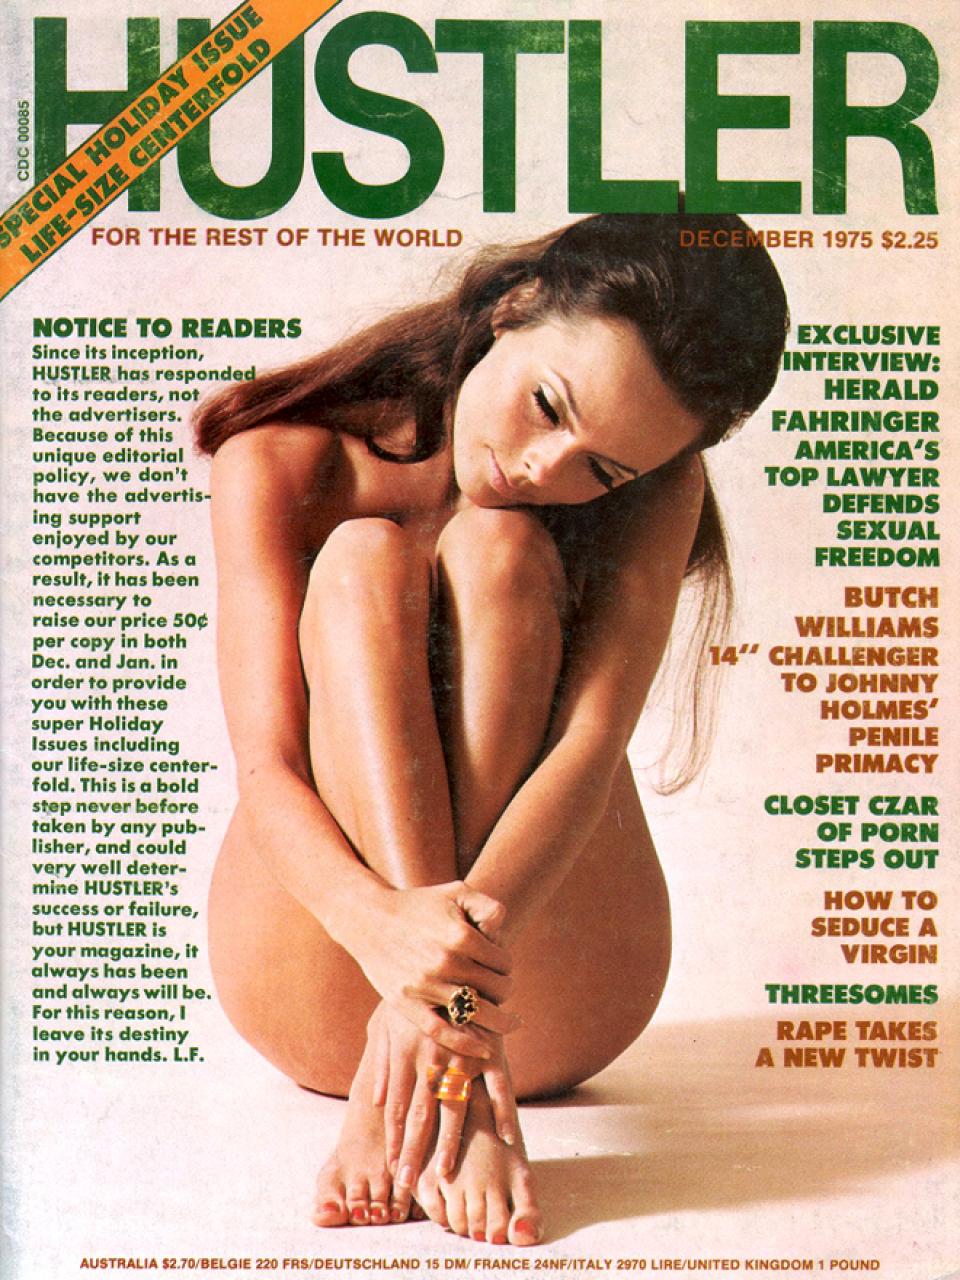 December 1975 - HUSTLER Magazine.